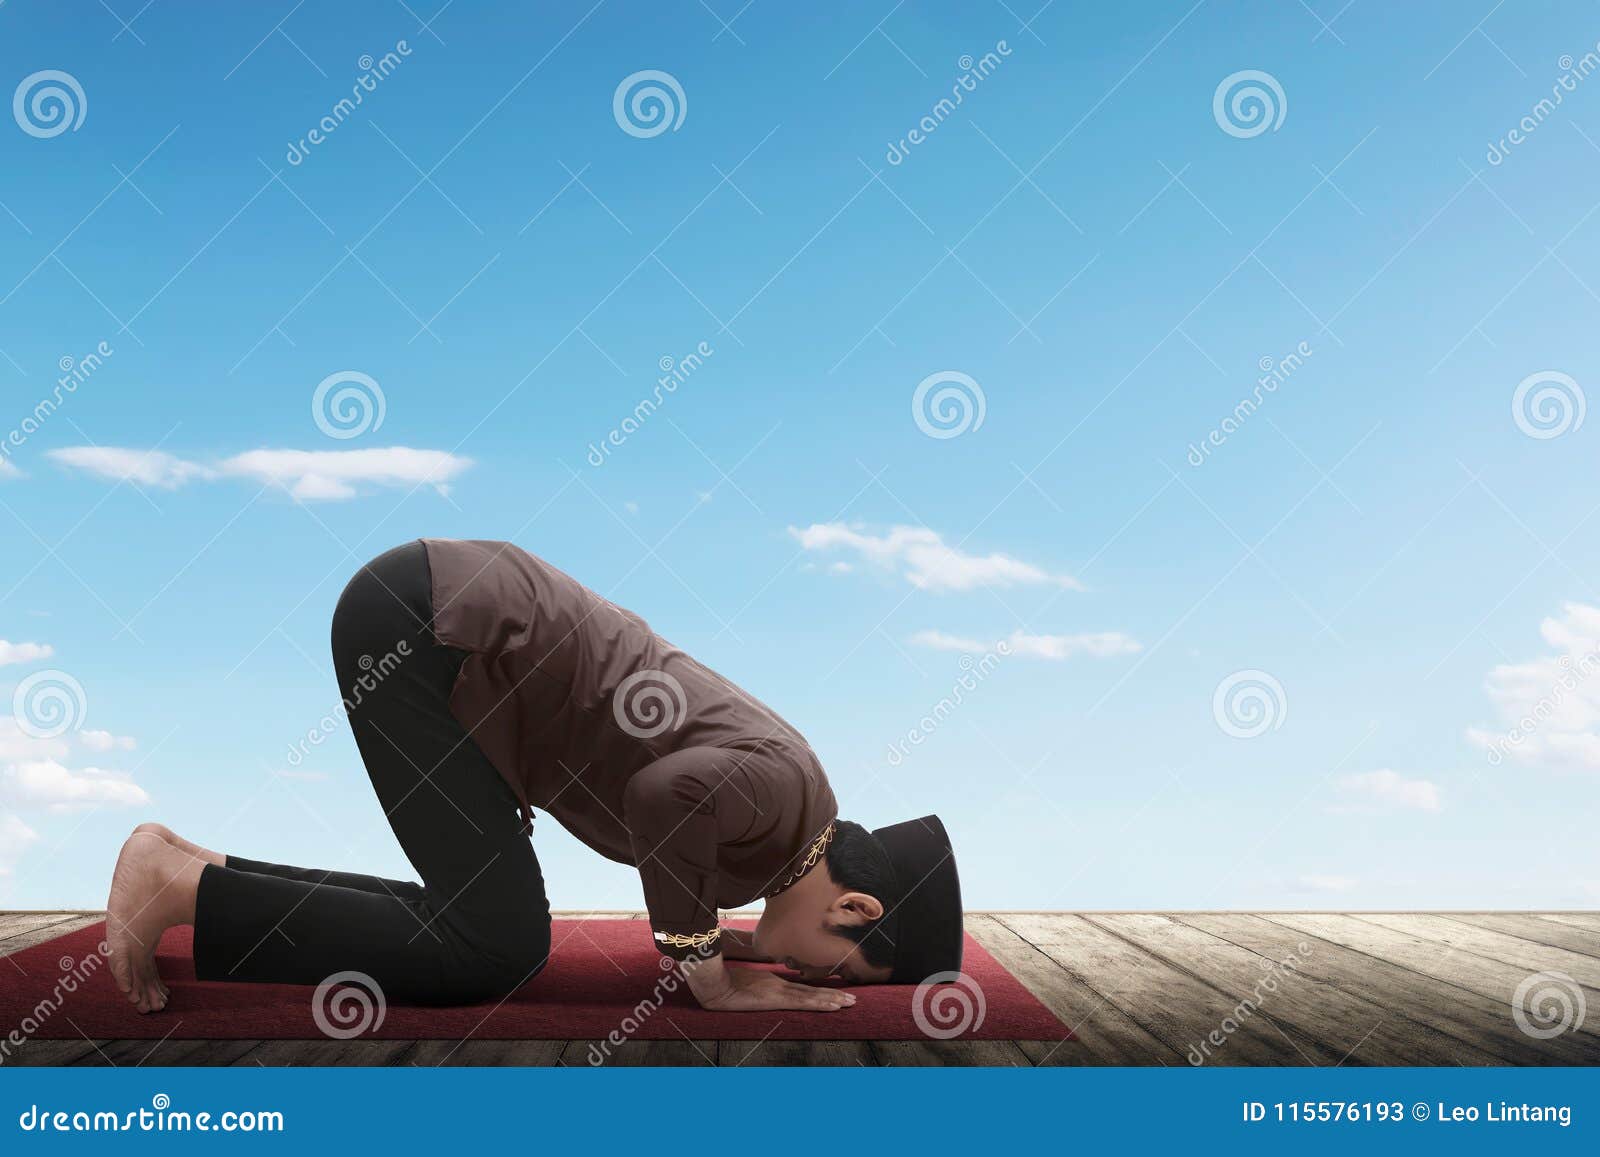 Side View of Asian Muslim Man Praying Stock Image - Image of muslim ...